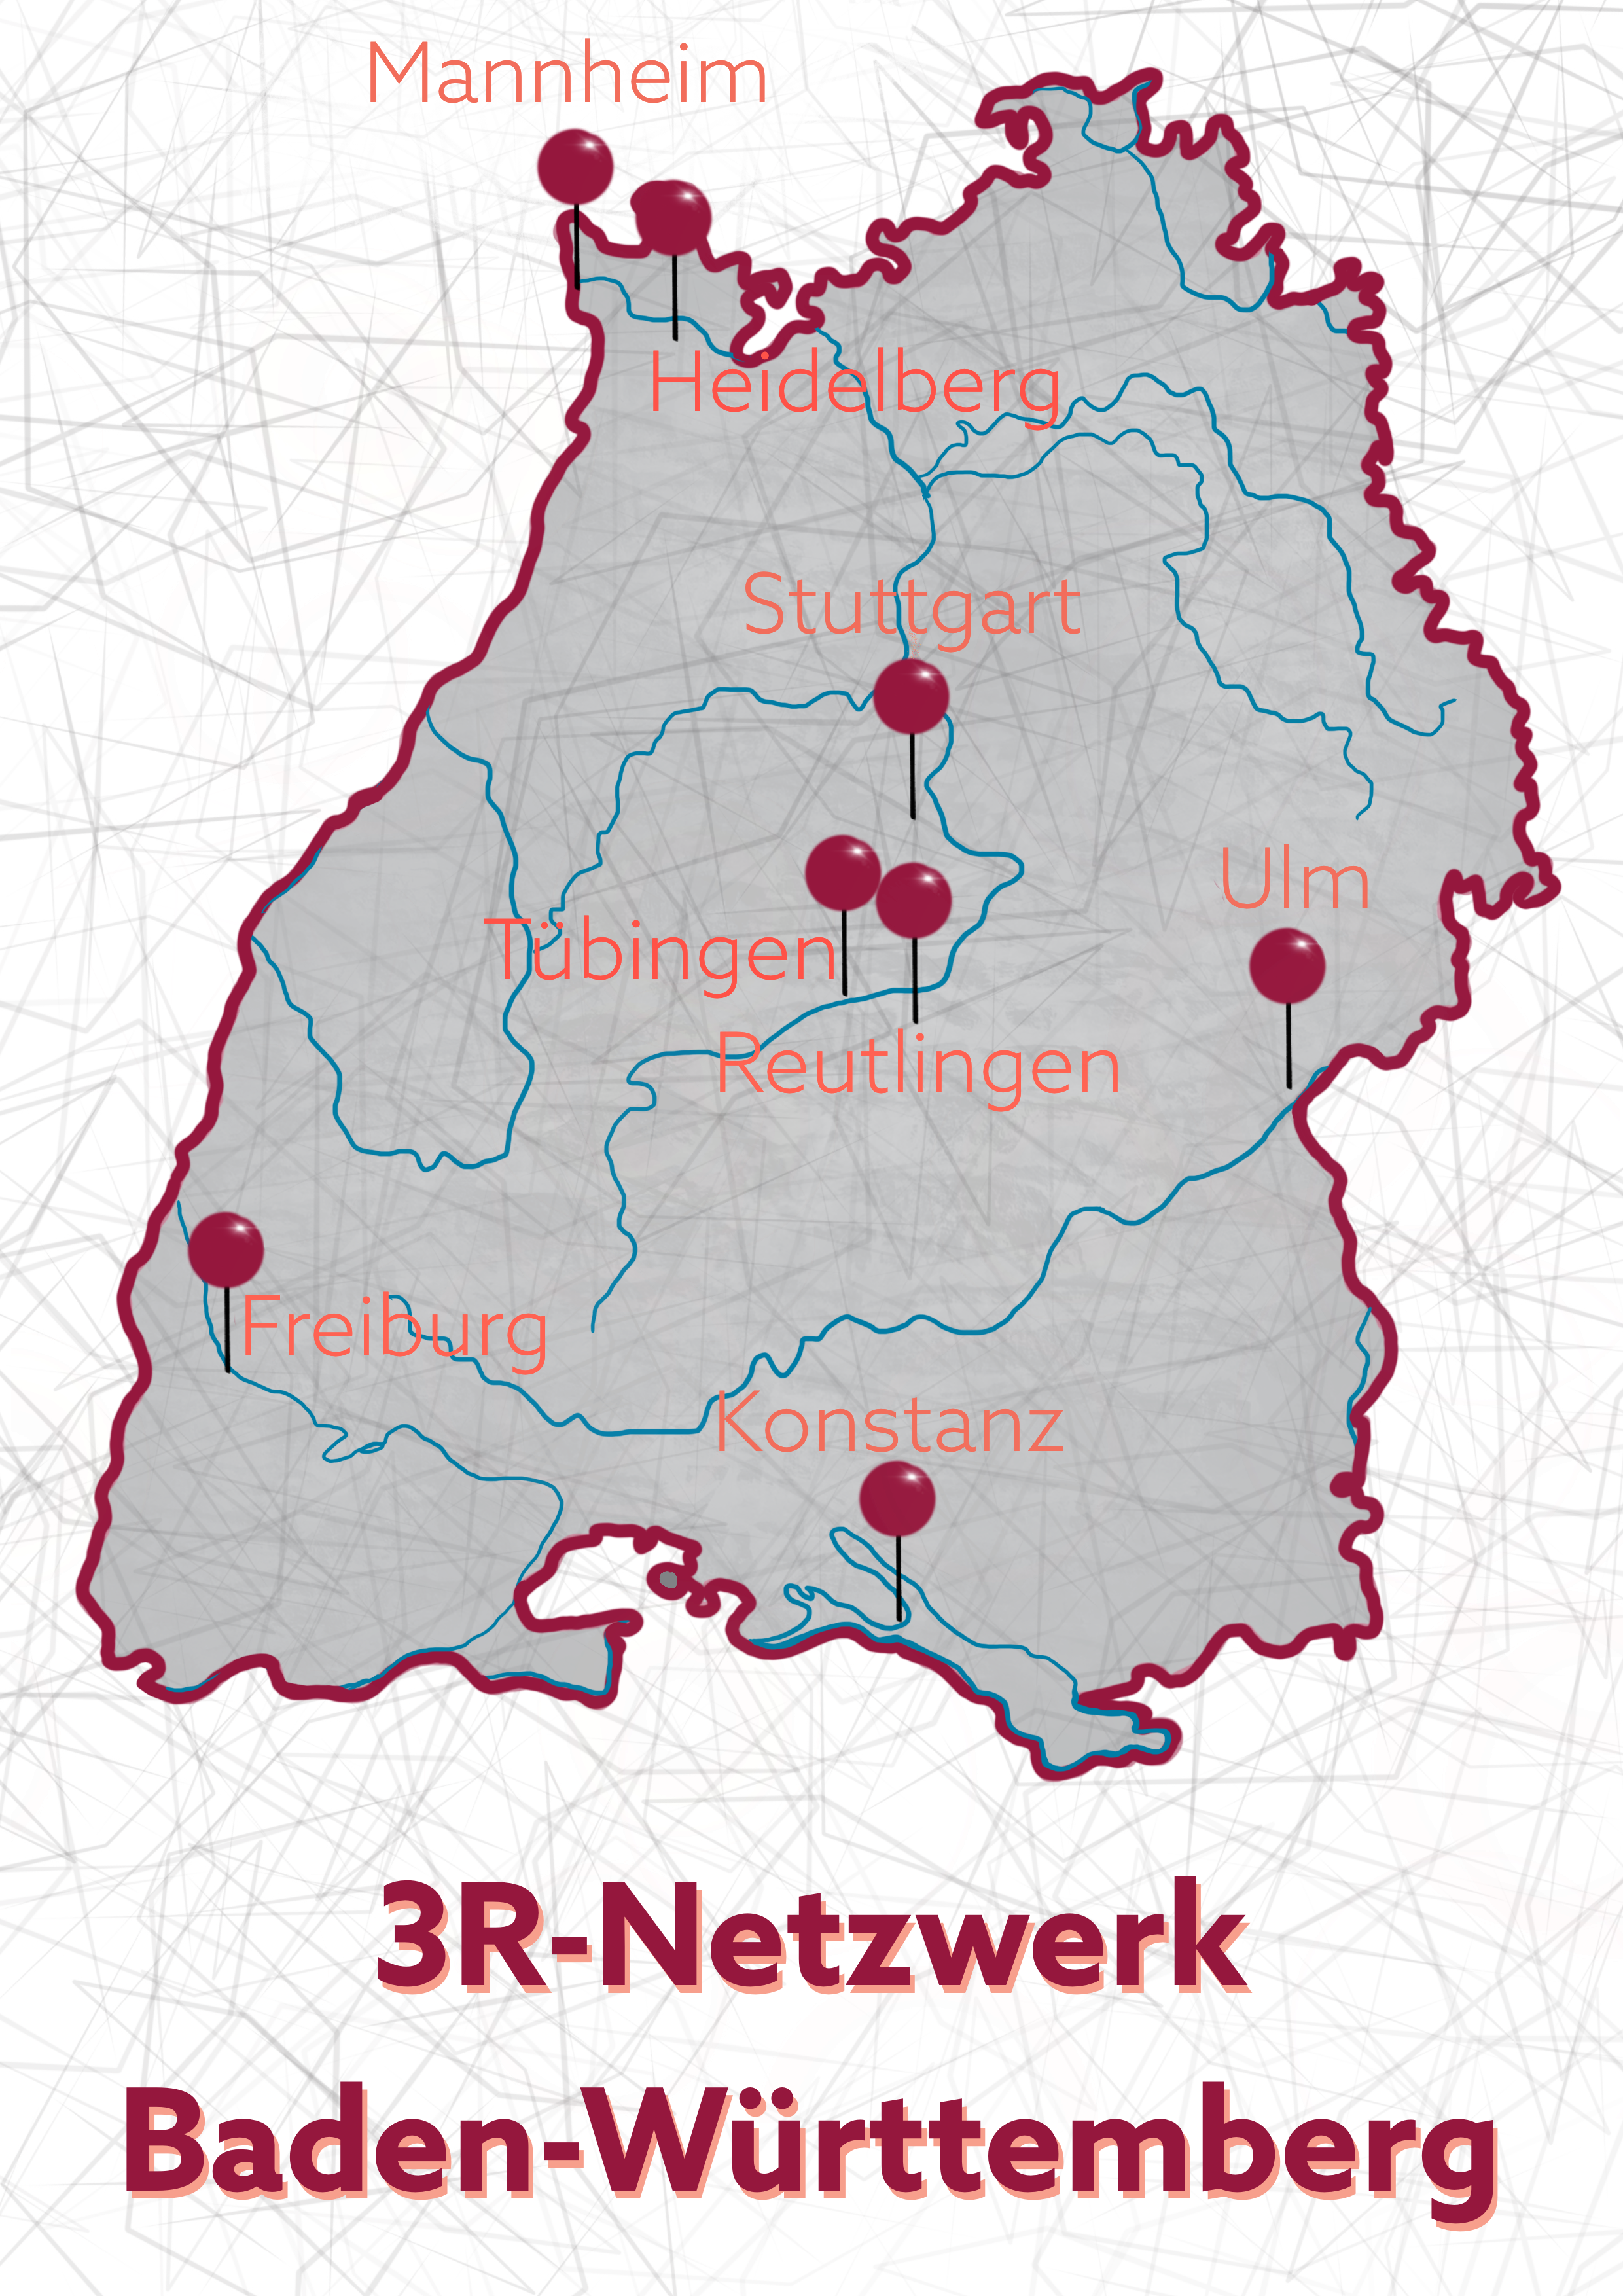 Die Grafik markiert die acht Standorte des 3R-Netzwerks in Baden-Württemberg: Mannheim, Heidelberg, Stuttgart, Reutlingen, Ulm, Freiburg und Konstanz.